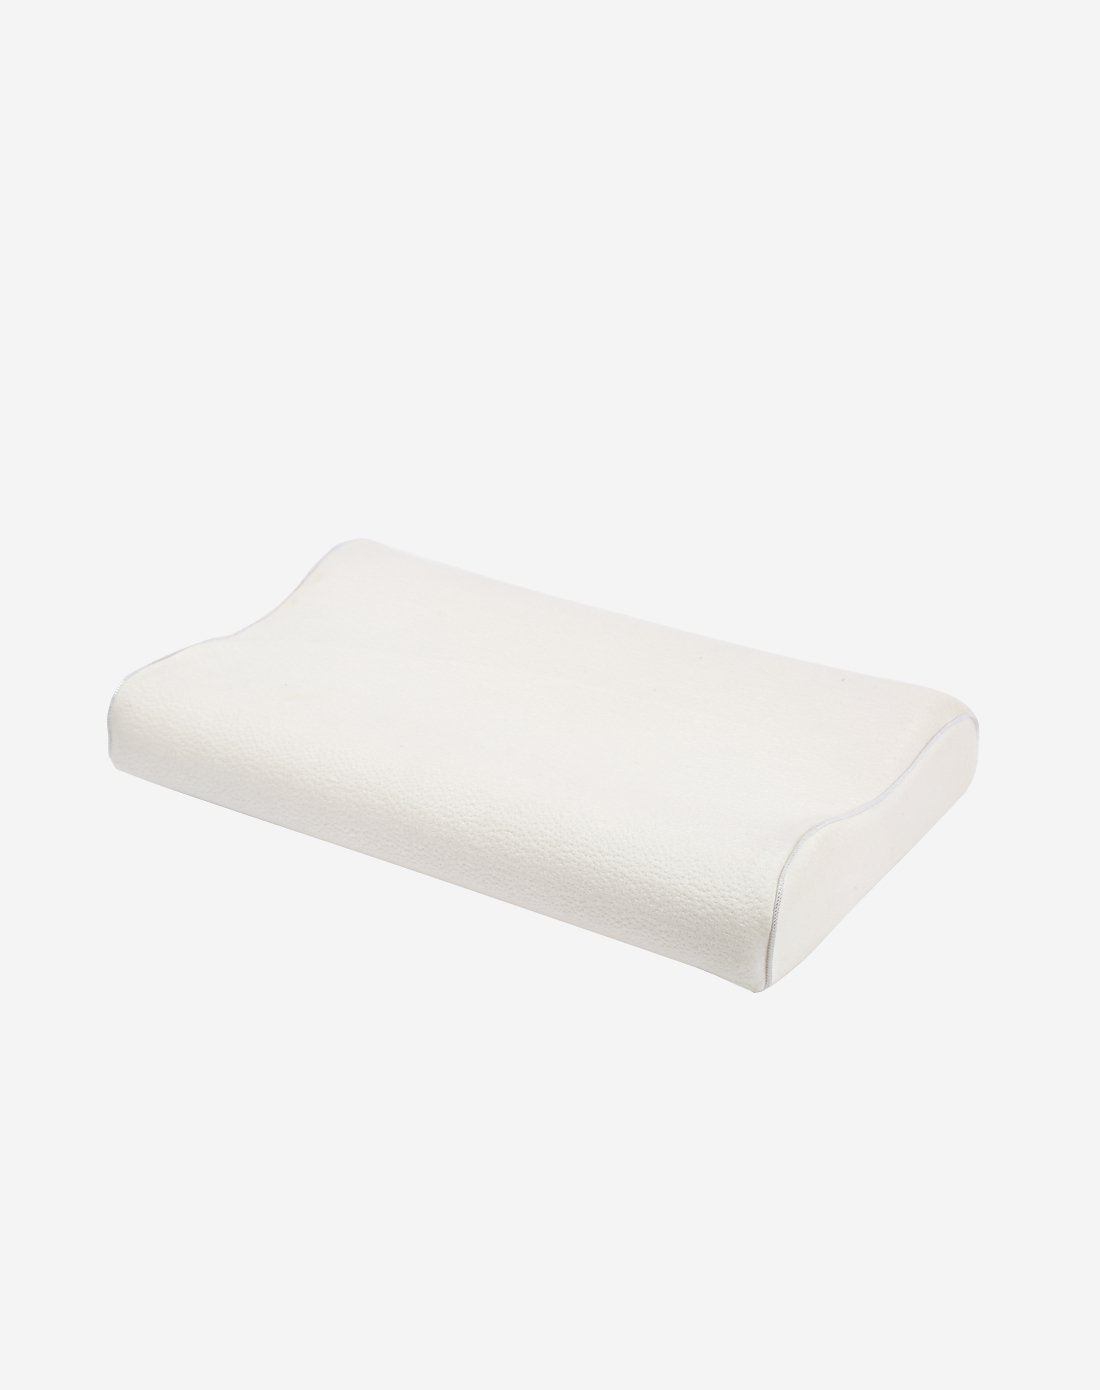 瑞士sgs国际认证环保可机洗硅胶枕